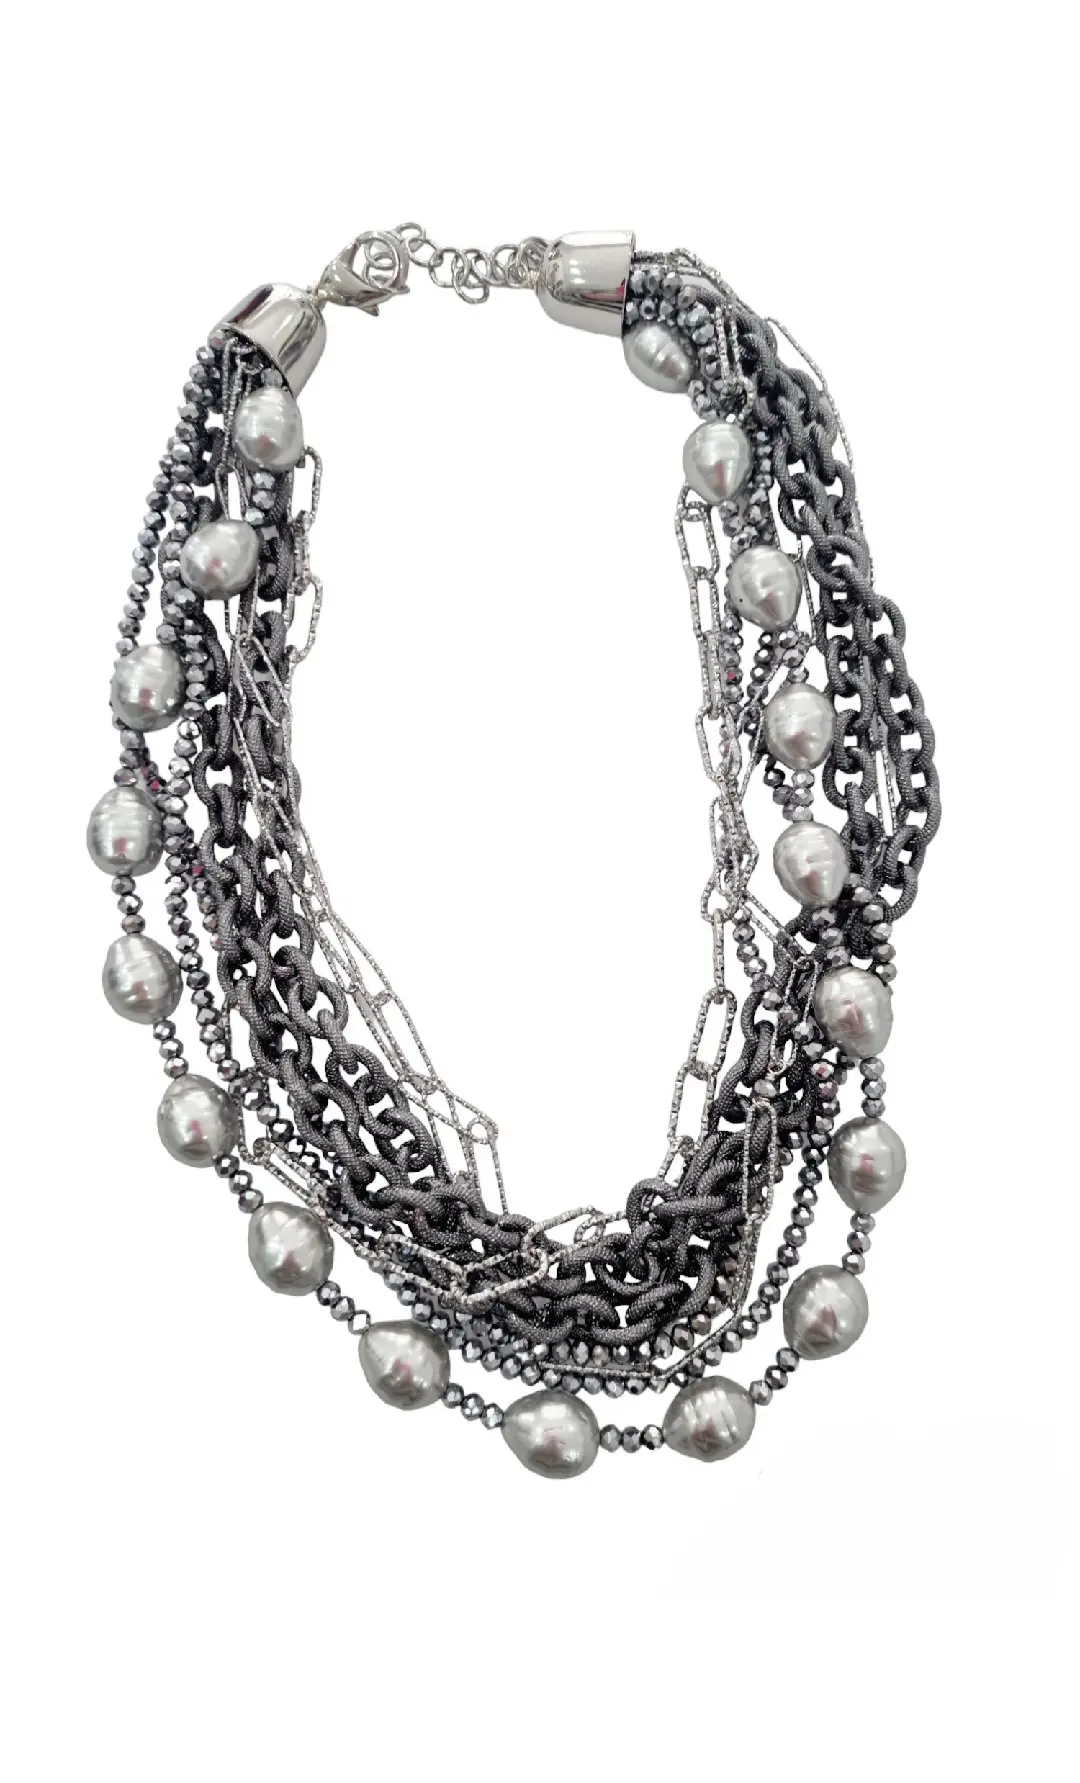 Collana girocollo realizzata  con perle di maioraca grigie, cristalli e catene satinate anallergiche grigio chiaro e scuro.Lunghezza regolabile 58cm